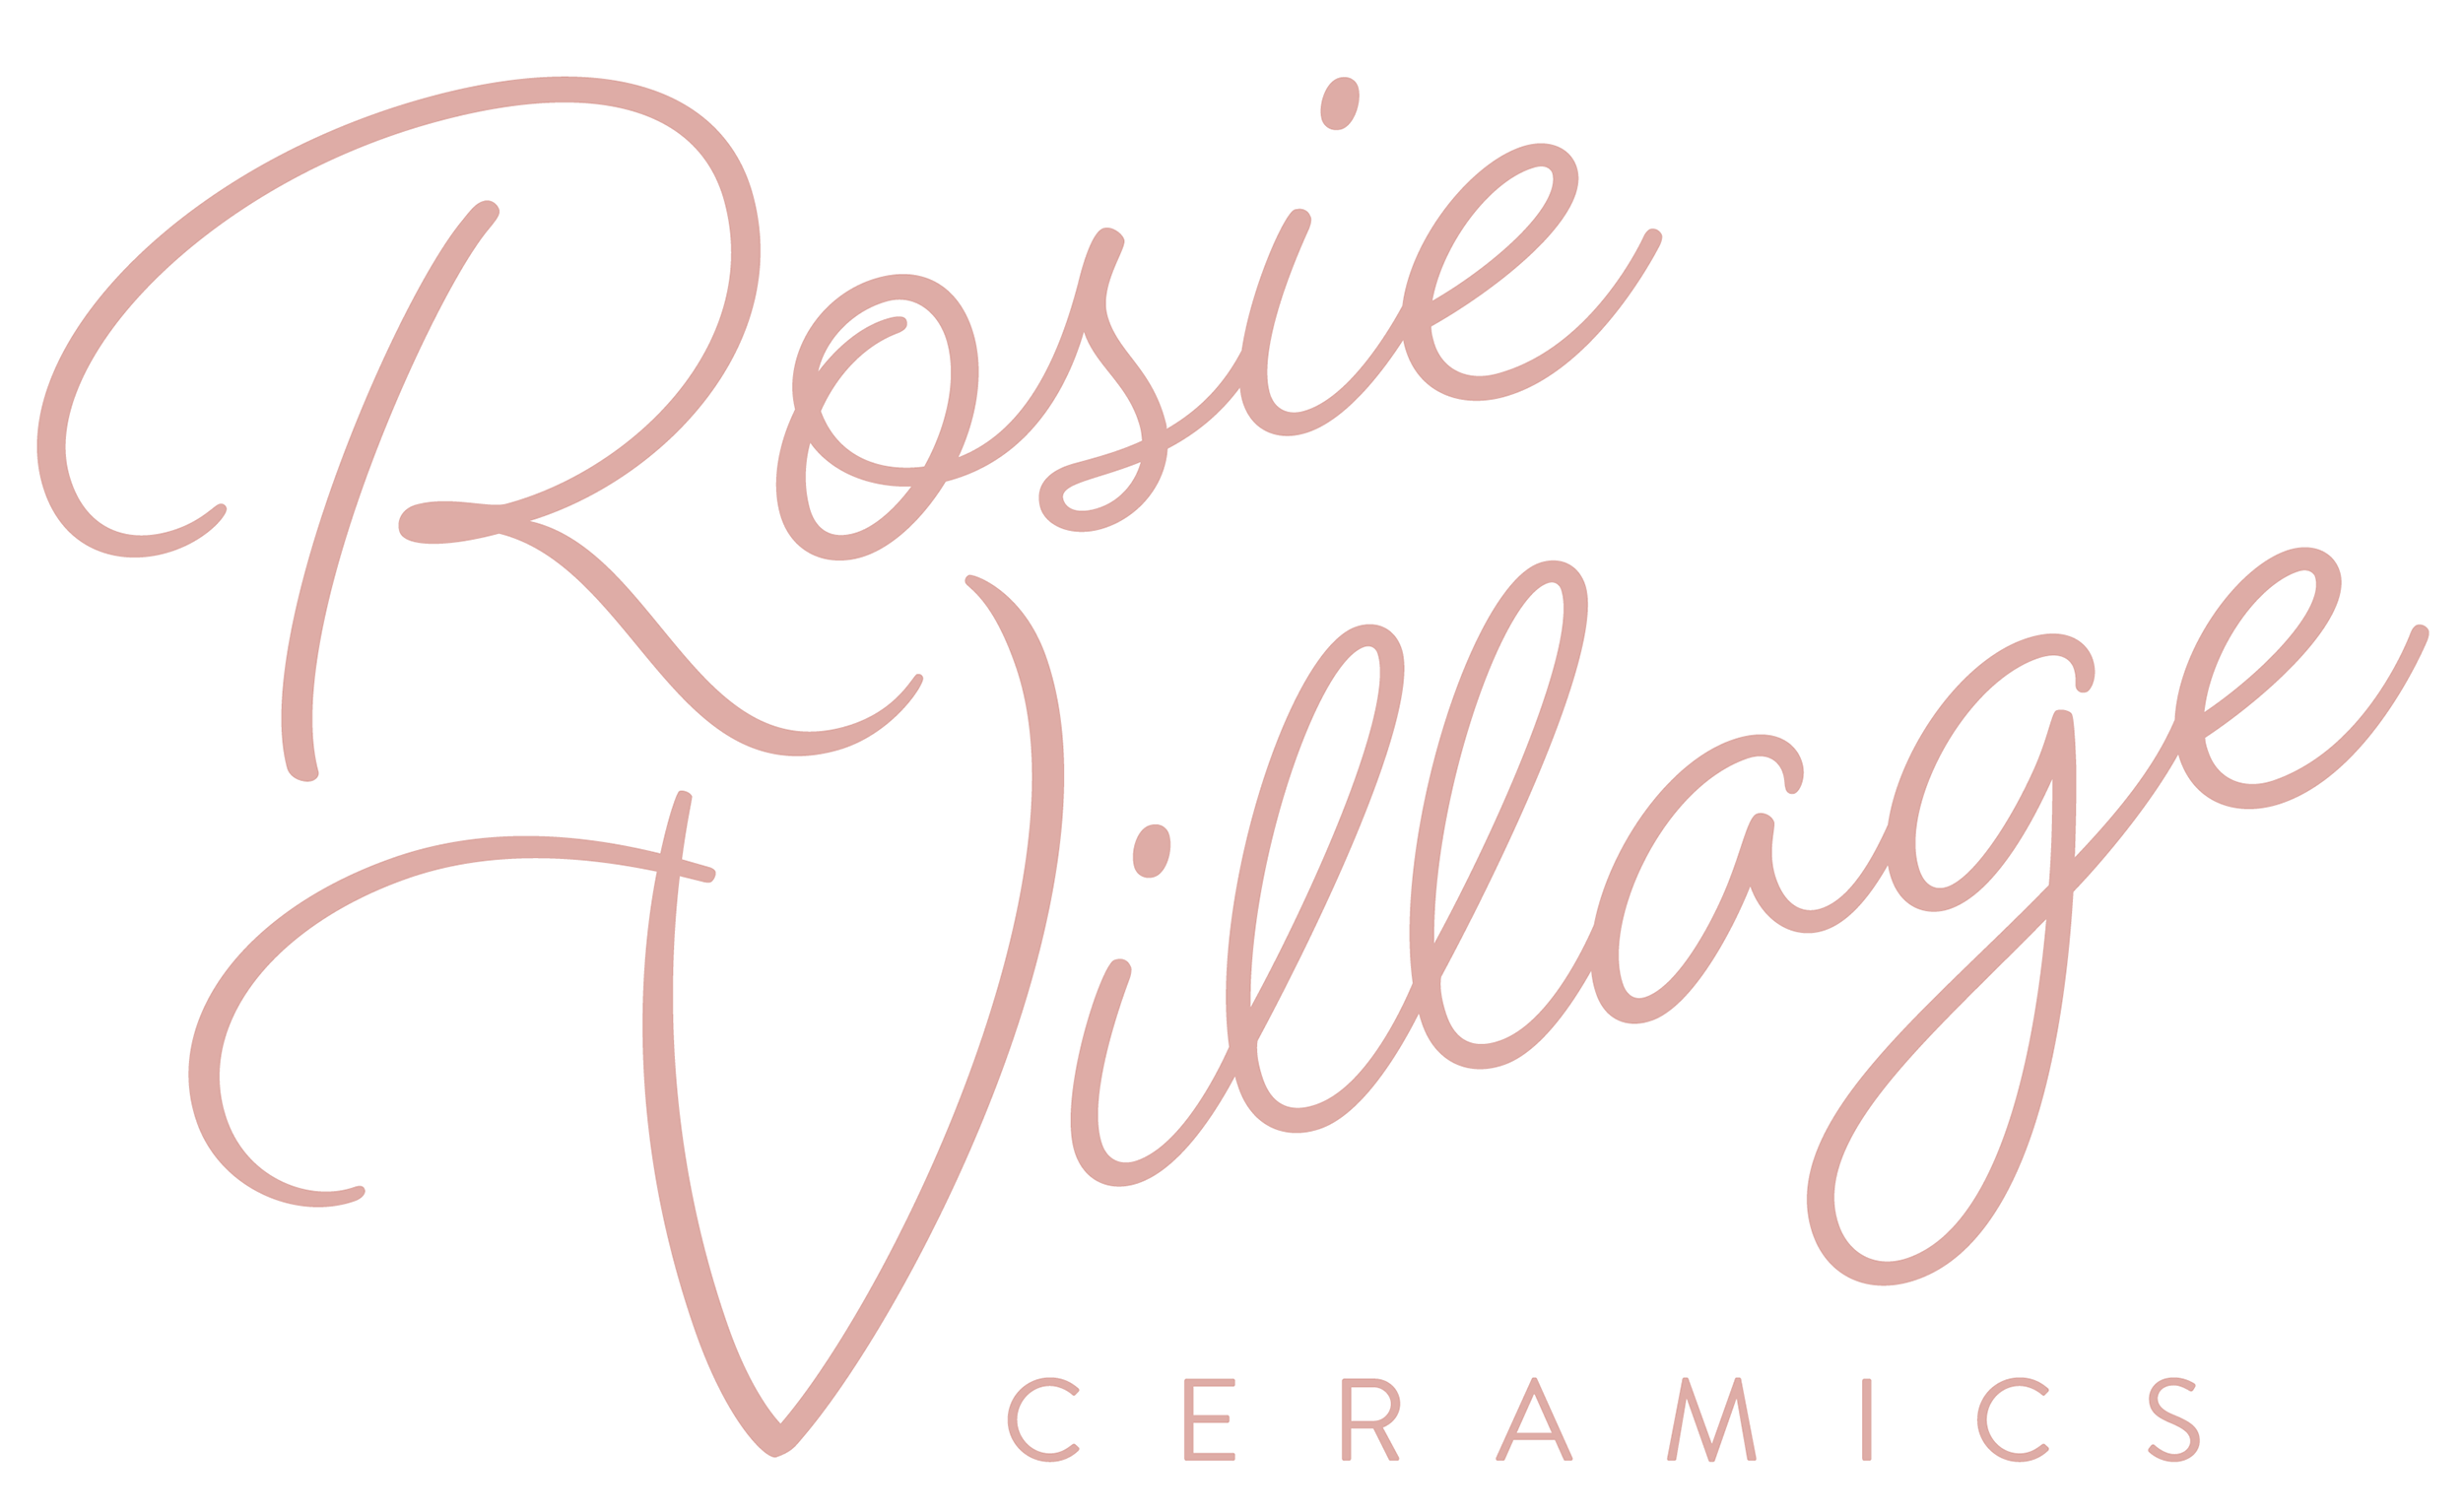 Rosie Village Ceramics